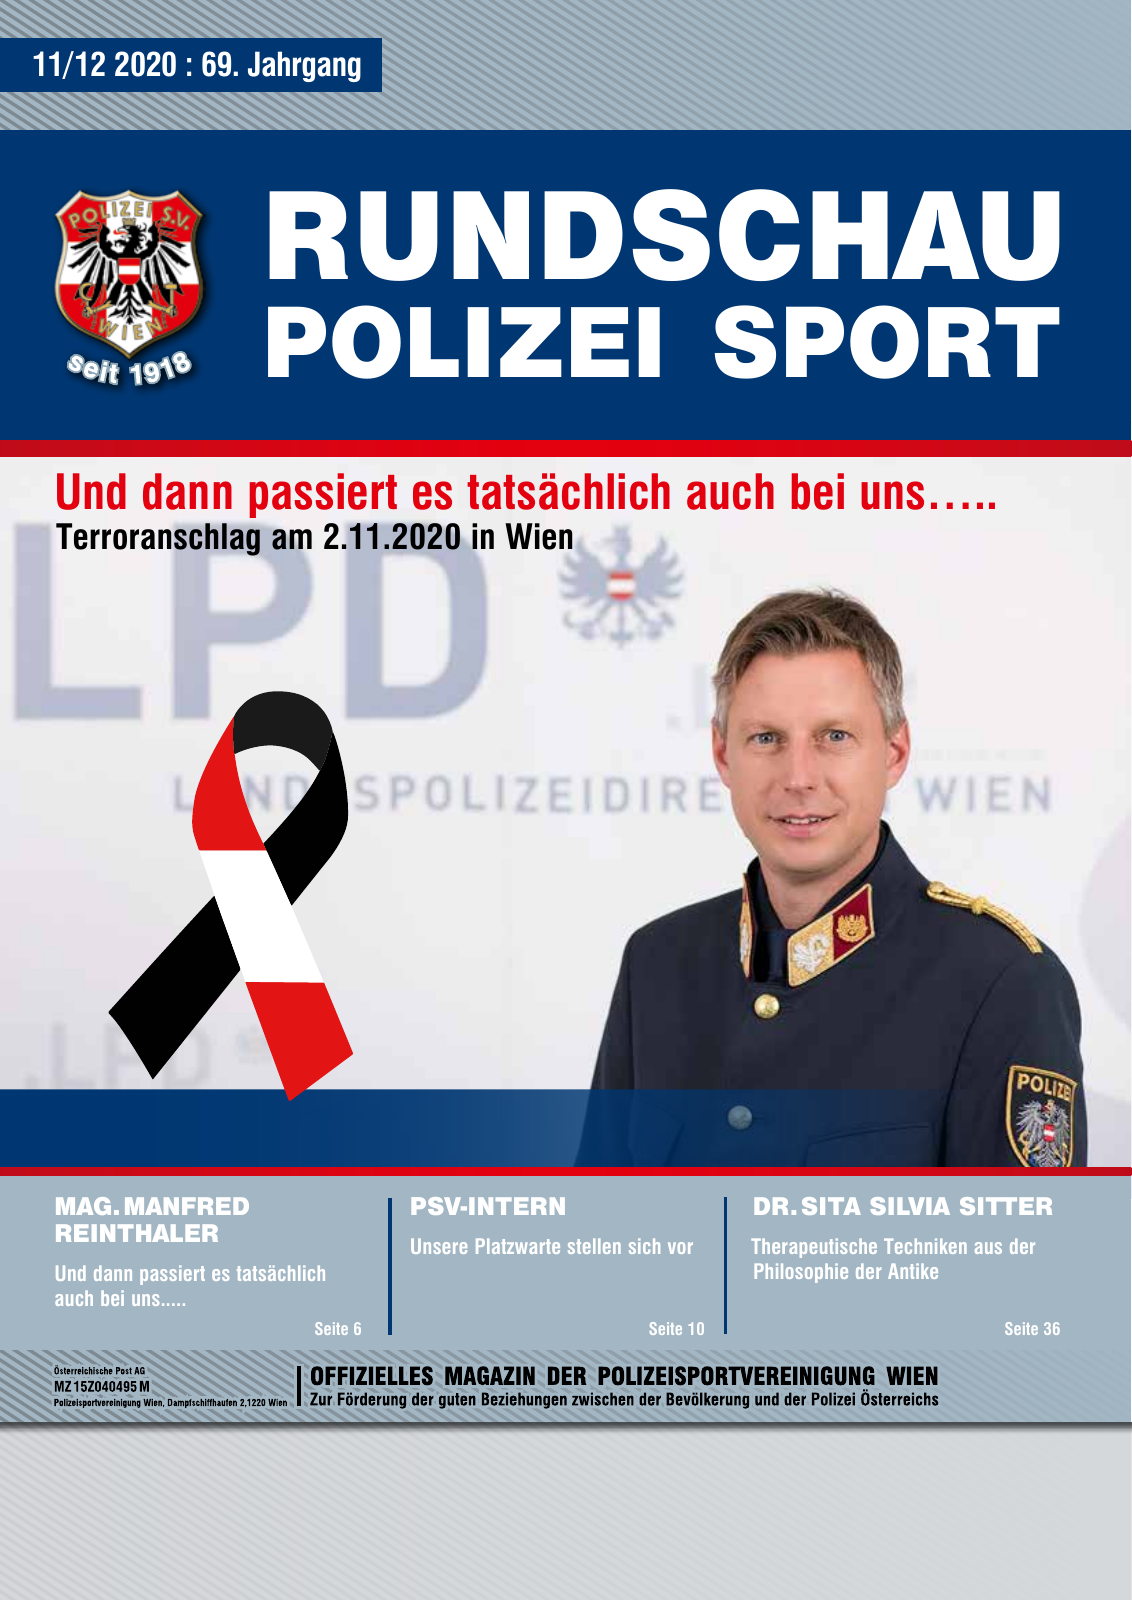 Vorschau Rundschau Polizei Sport 11-12/2020 Seite 1